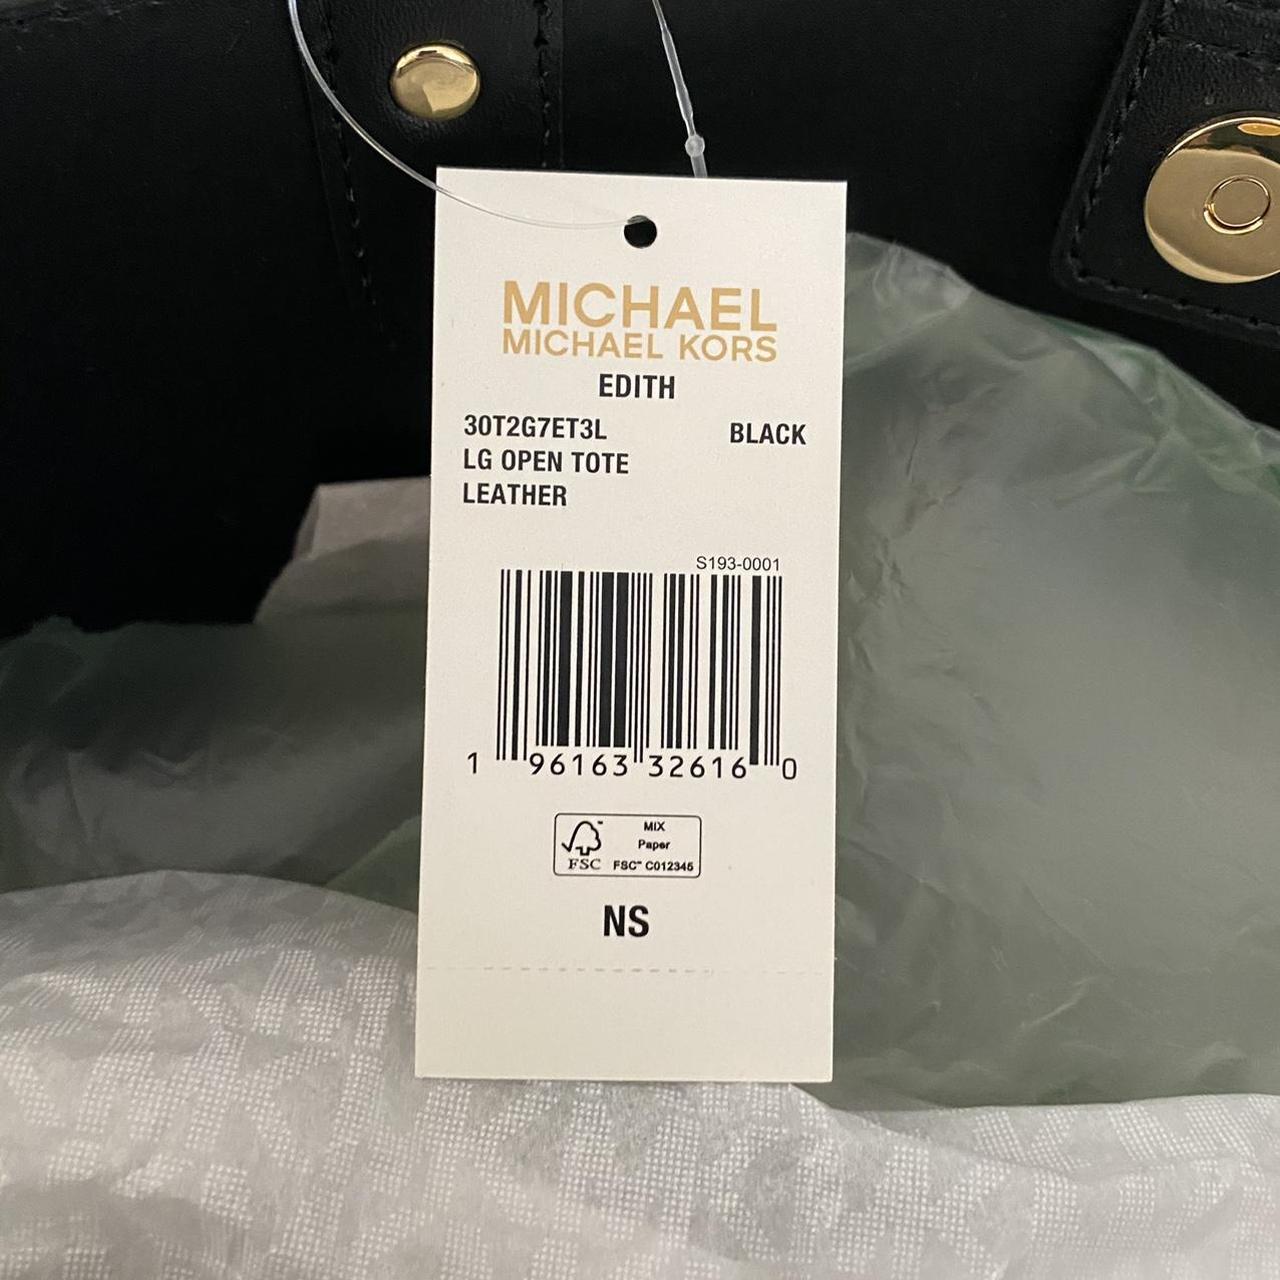 Michael Kors - Edith Large Saffiano Leather Tote Bag - 30T2G7ET3L - 196163326184